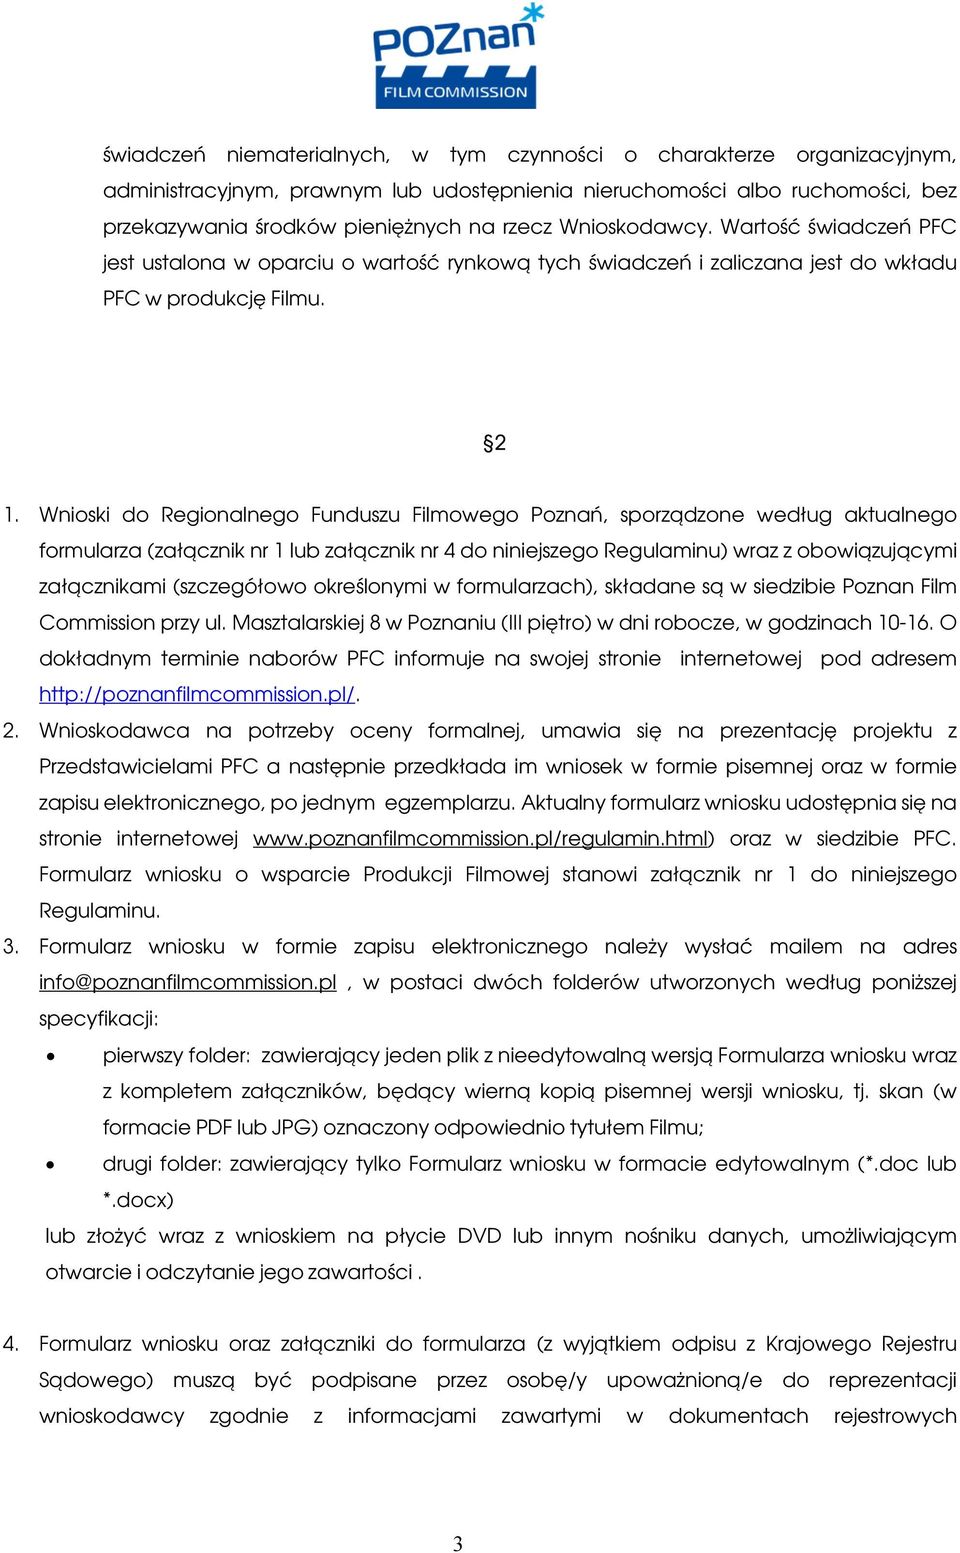 Wnioski do Regionalnego Funduszu Filmowego Poznań, sporządzone według aktualnego formularza (załącznik nr 1 lub załącznik nr 4 do niniejszego Regulaminu) wraz z obowiązującymi załącznikami